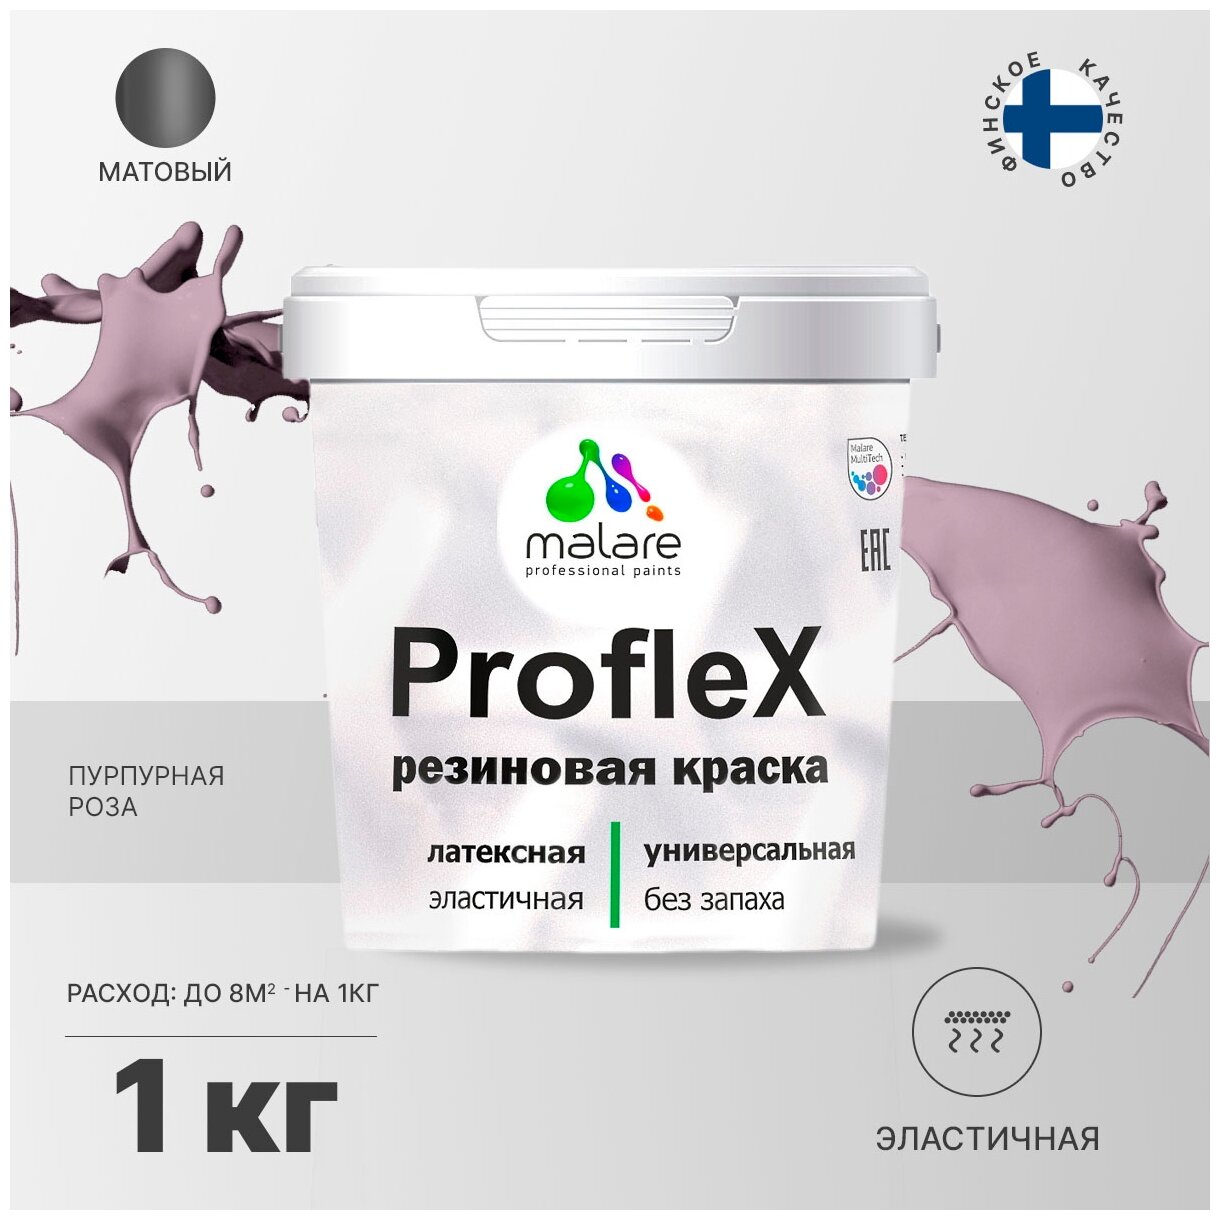   Malare ProfleX  , , , , , ,  , ,  , ,  , 1 .